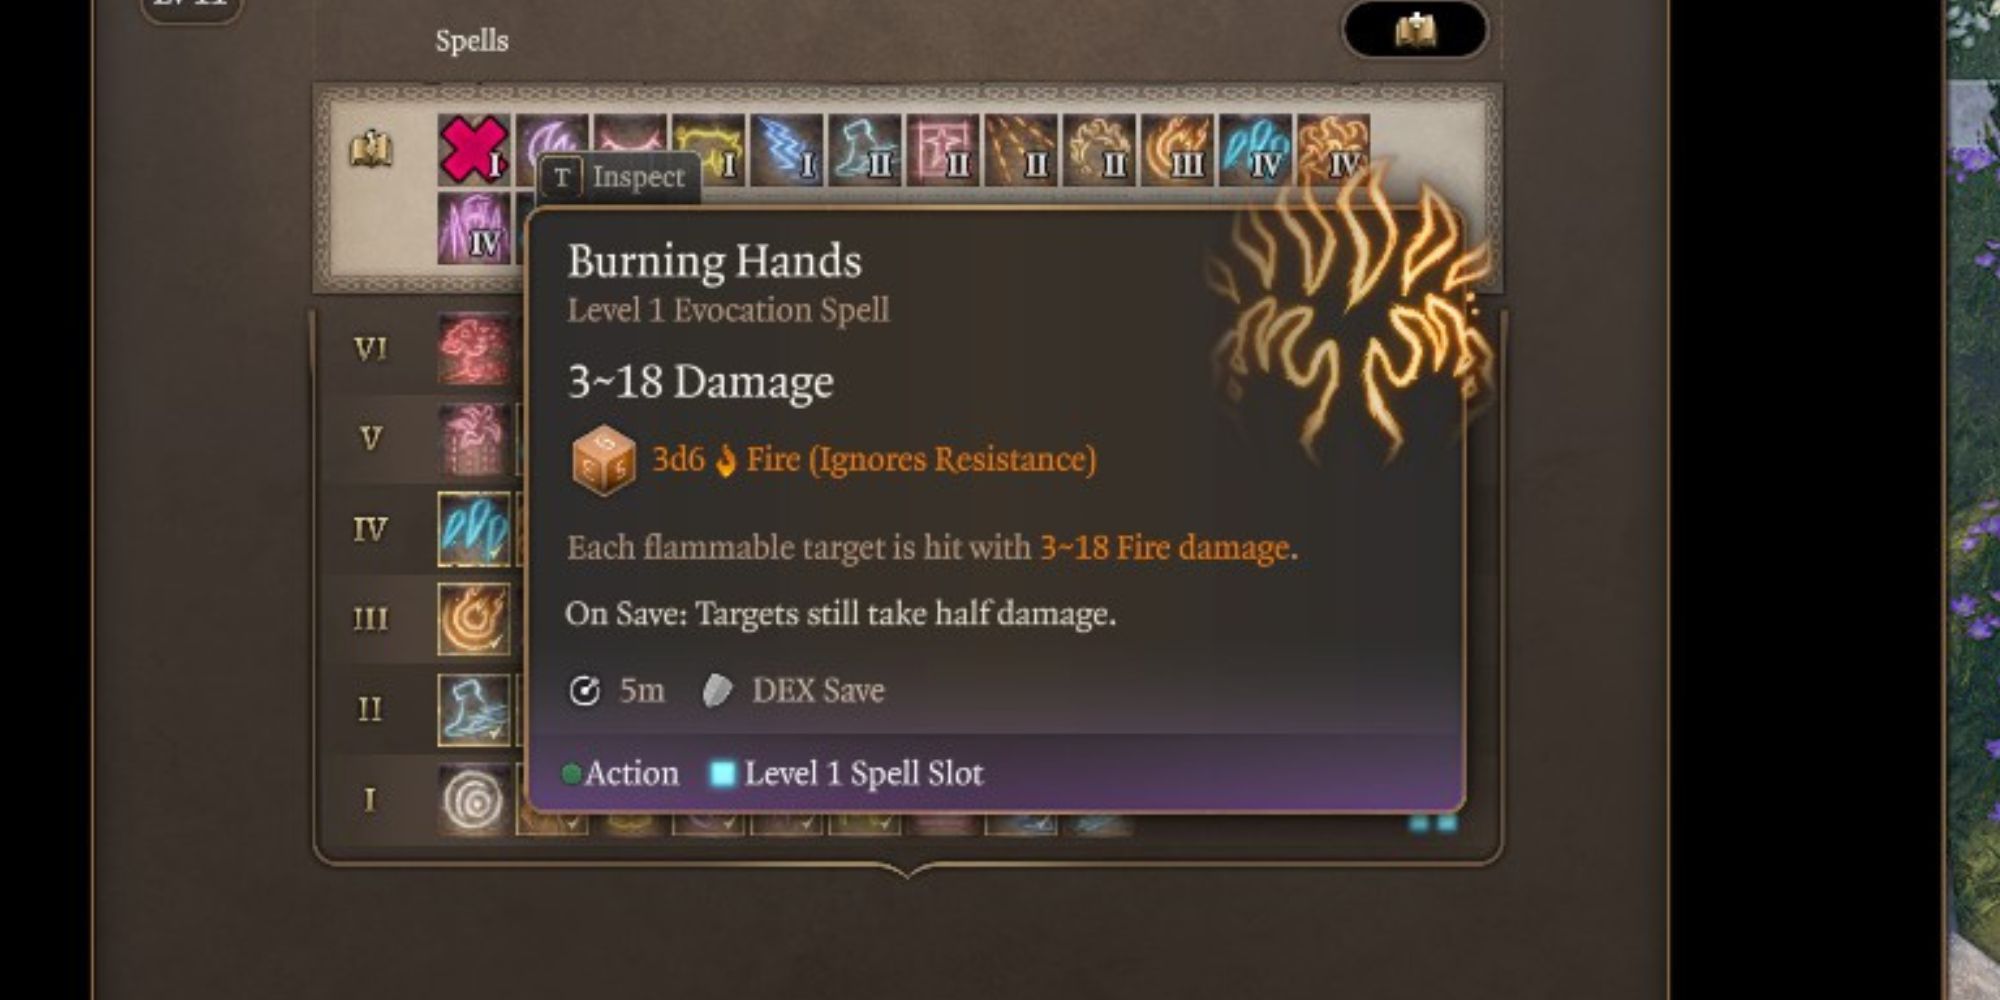 The Burning Hands spell in Baldur's Gate 3